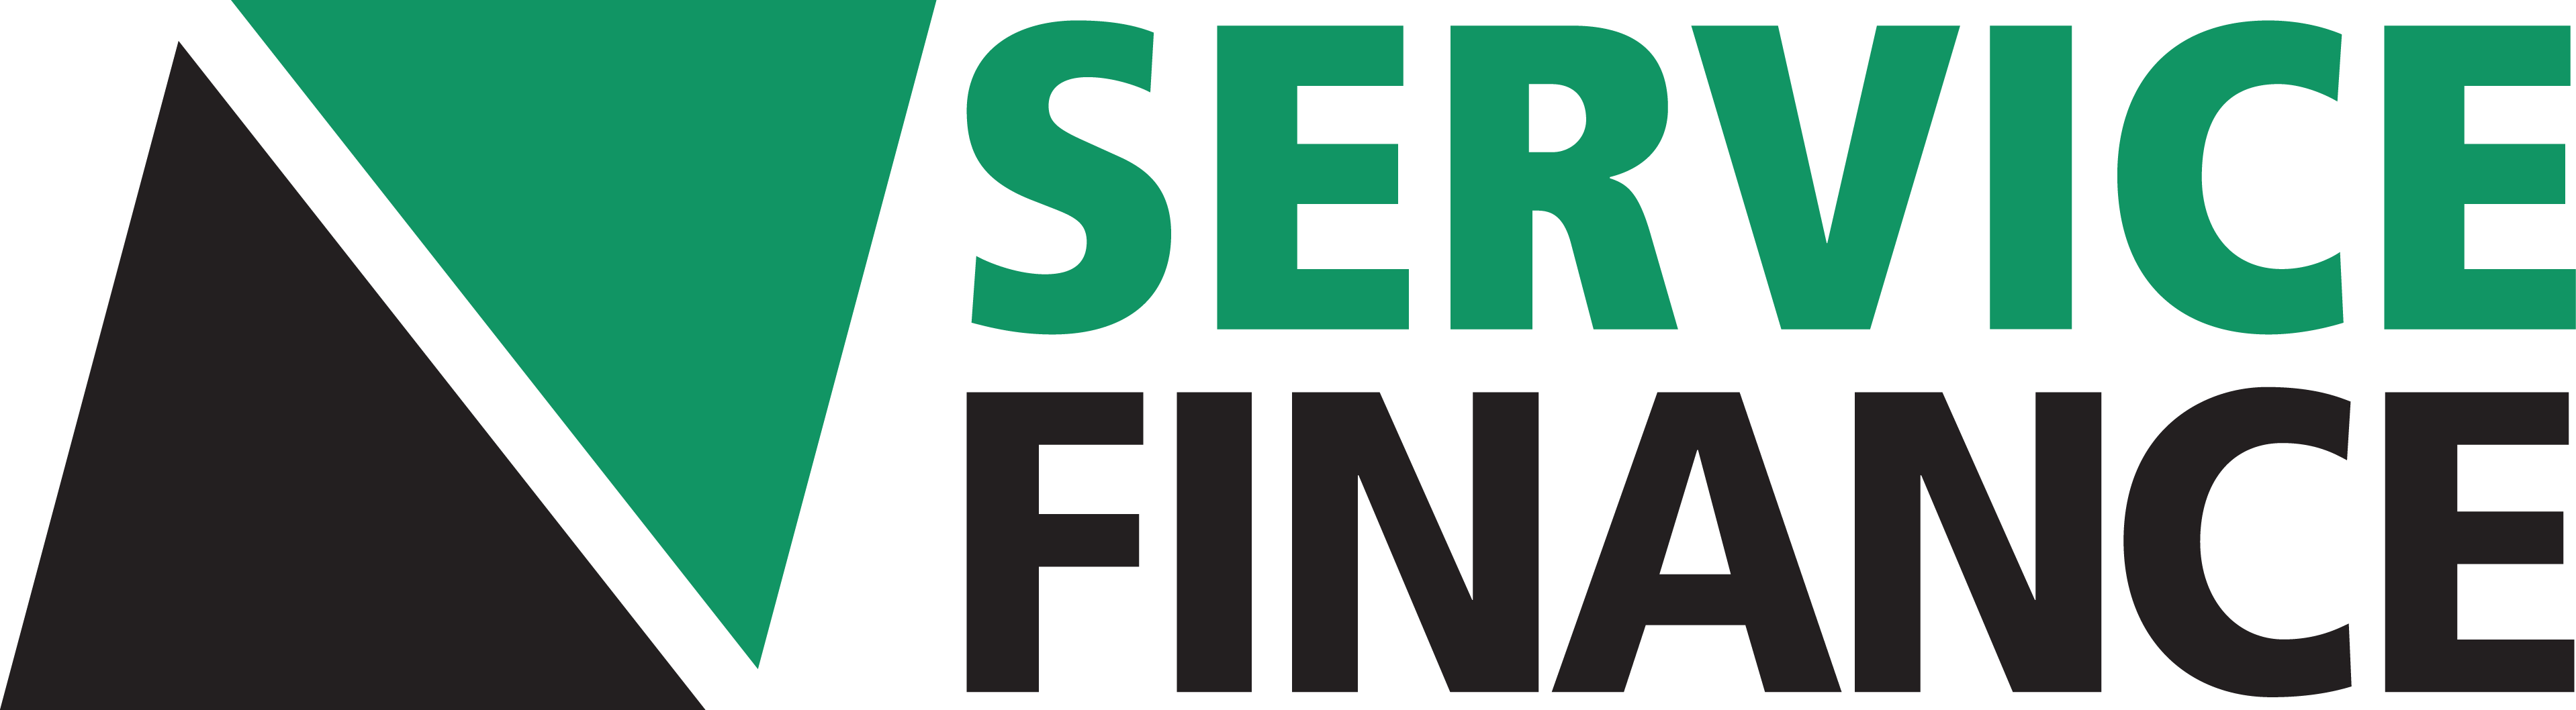 service_finance_logo LEAP 1 Sales Platform for Contractors